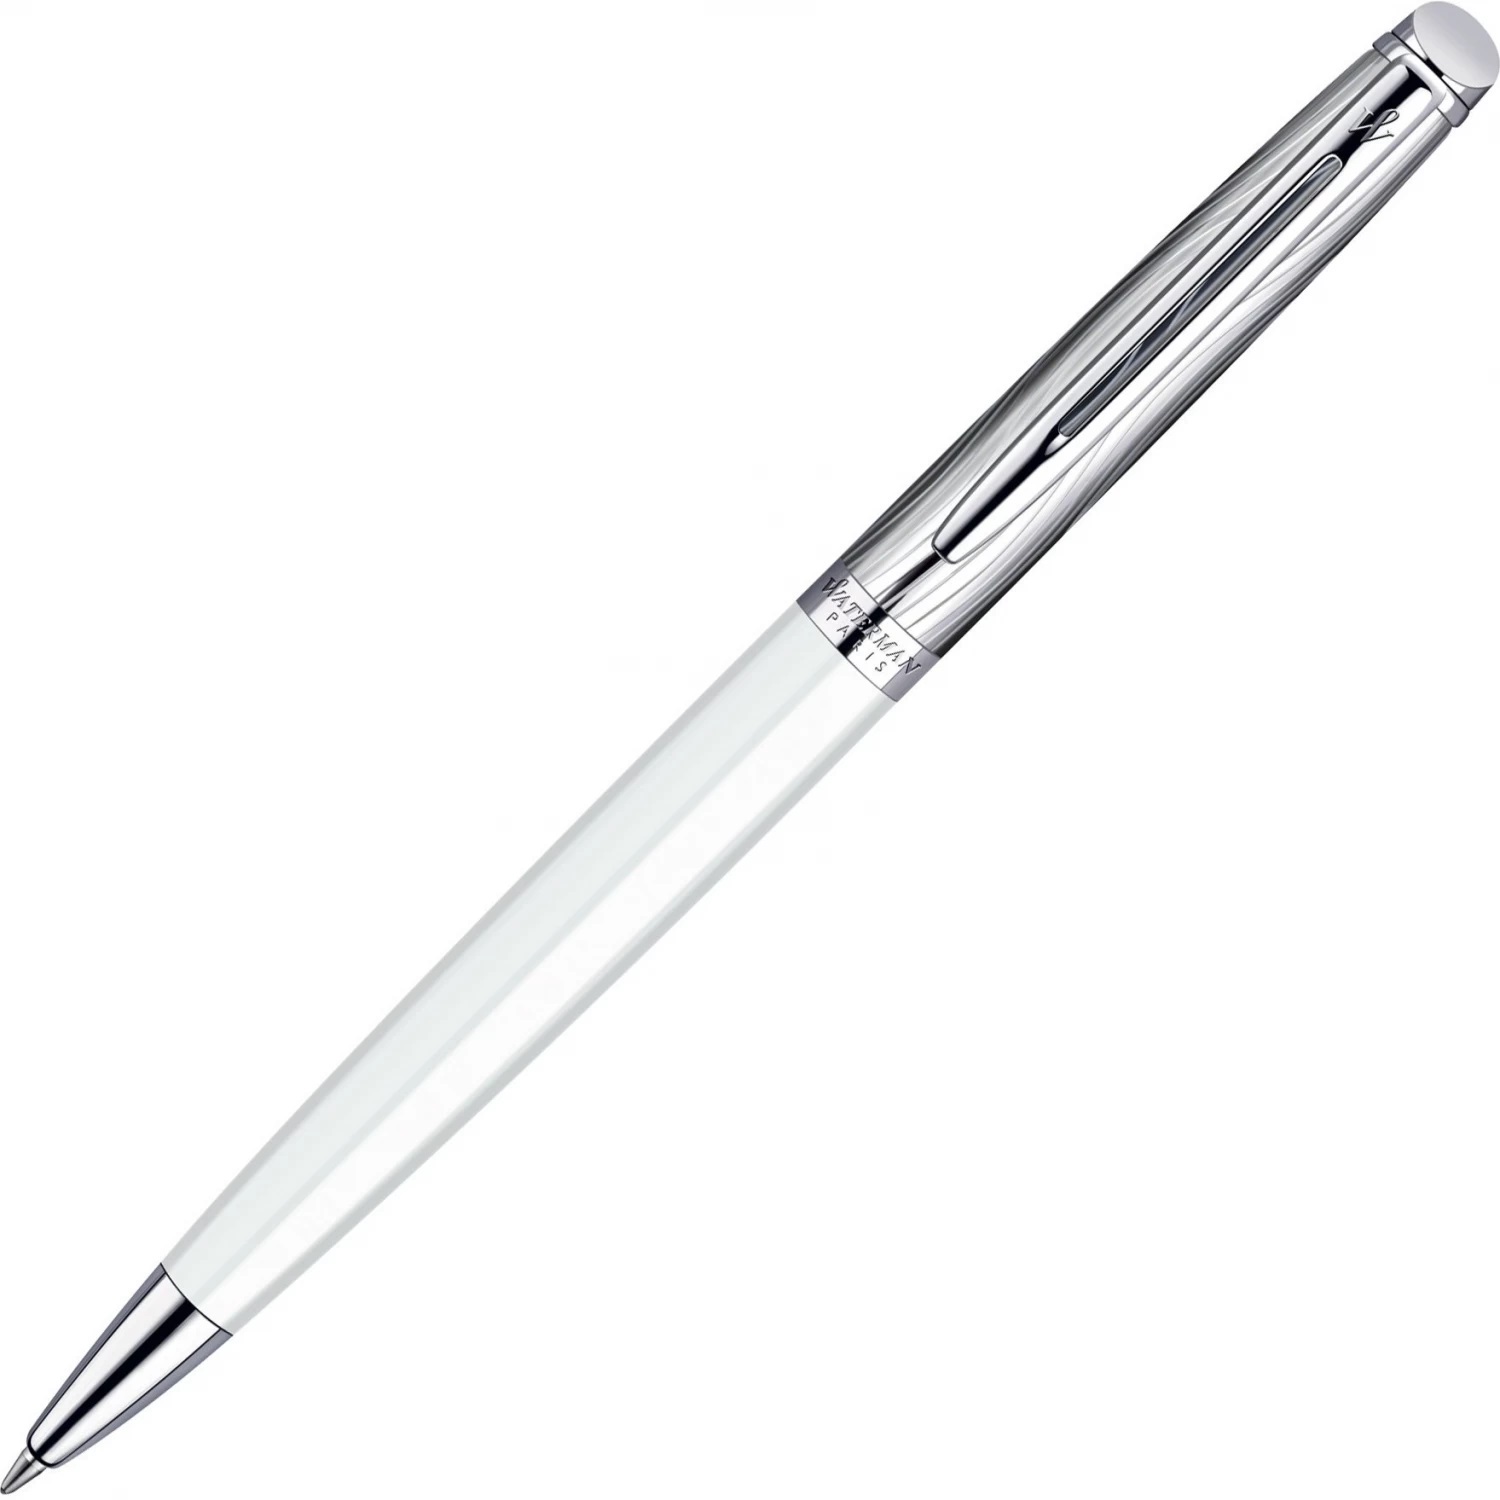 Шариковая ручка Waterman Hemisphere S0921310 (S0921310) ручка подарочная шариковая в кожзам футляре поворотная тонга корпус белый с золотым